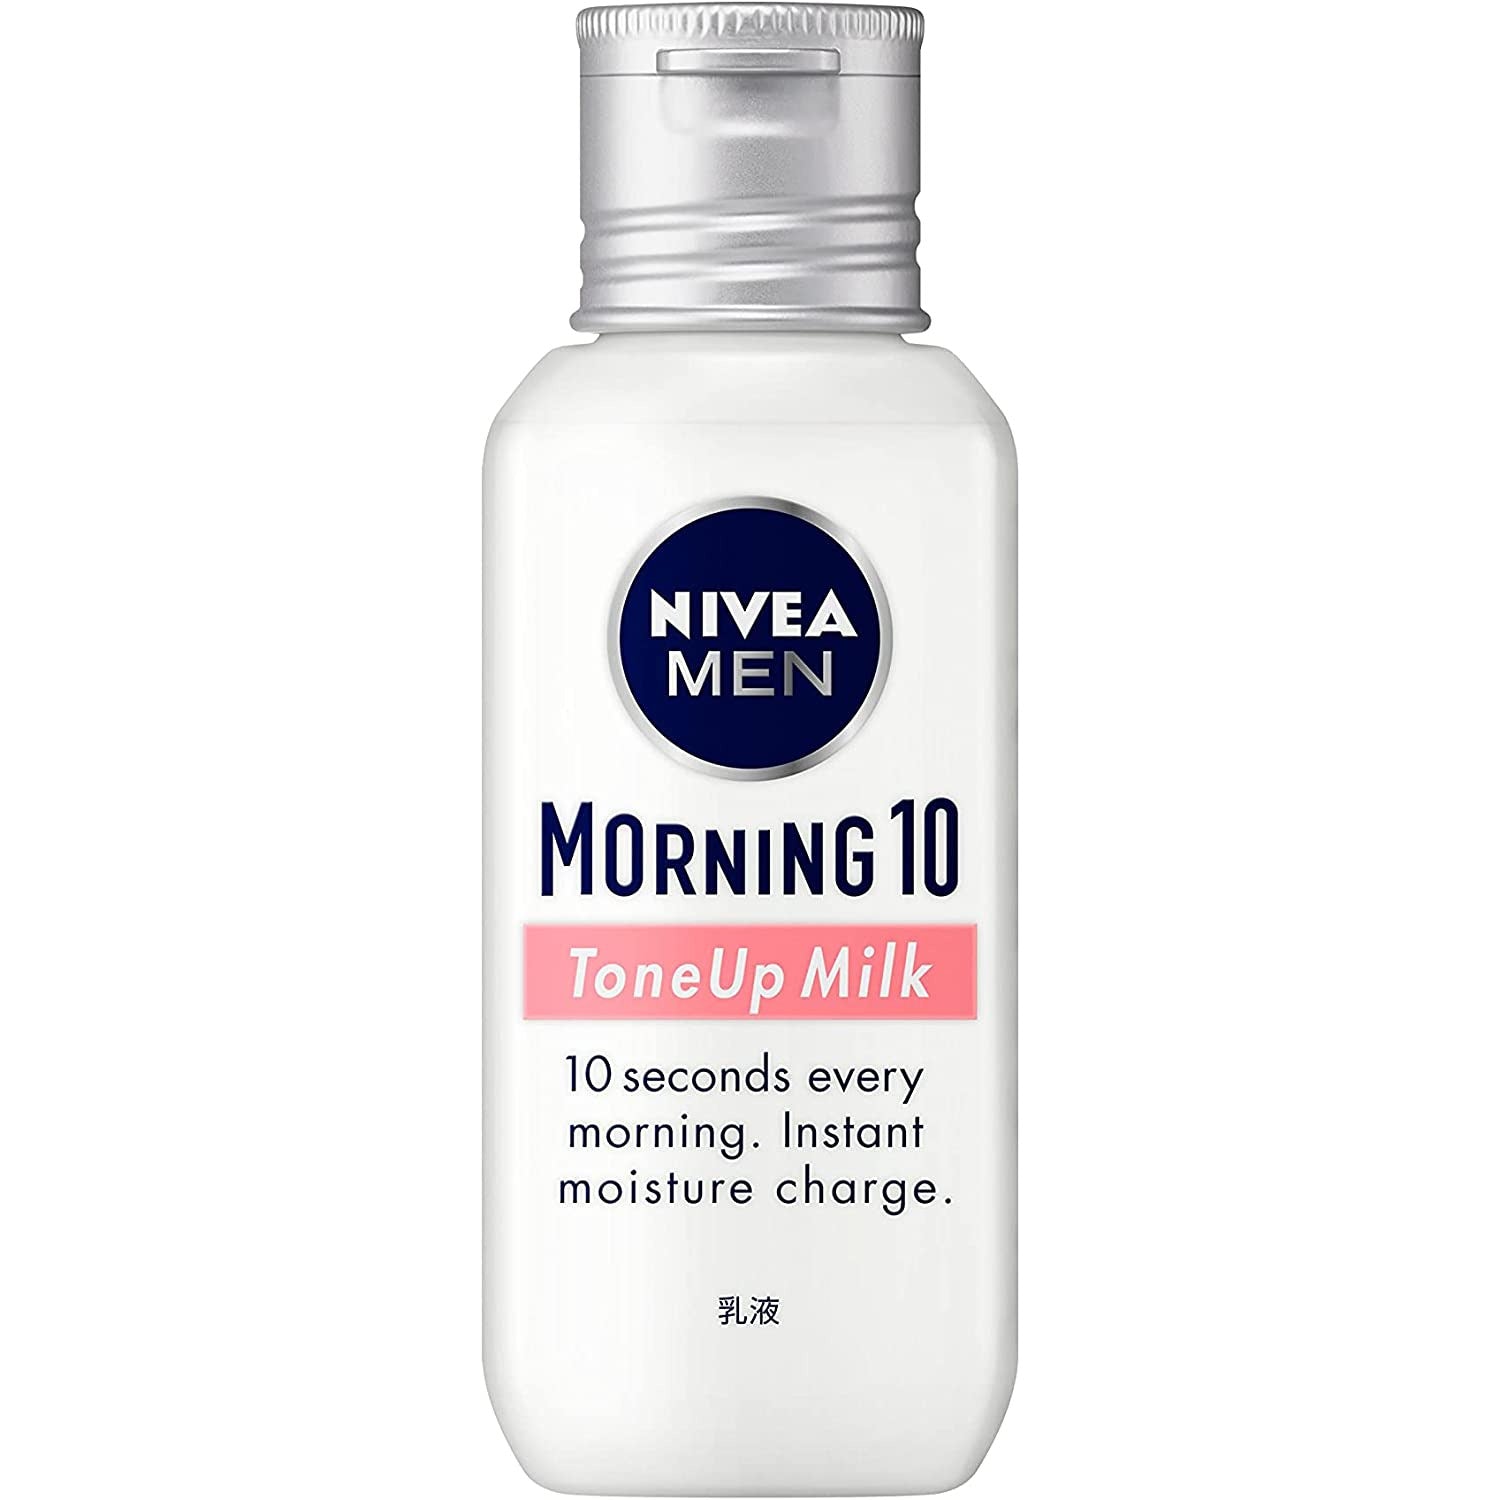 Kao NIVEA MEN Morning 10 Tone Up Milk 100ml